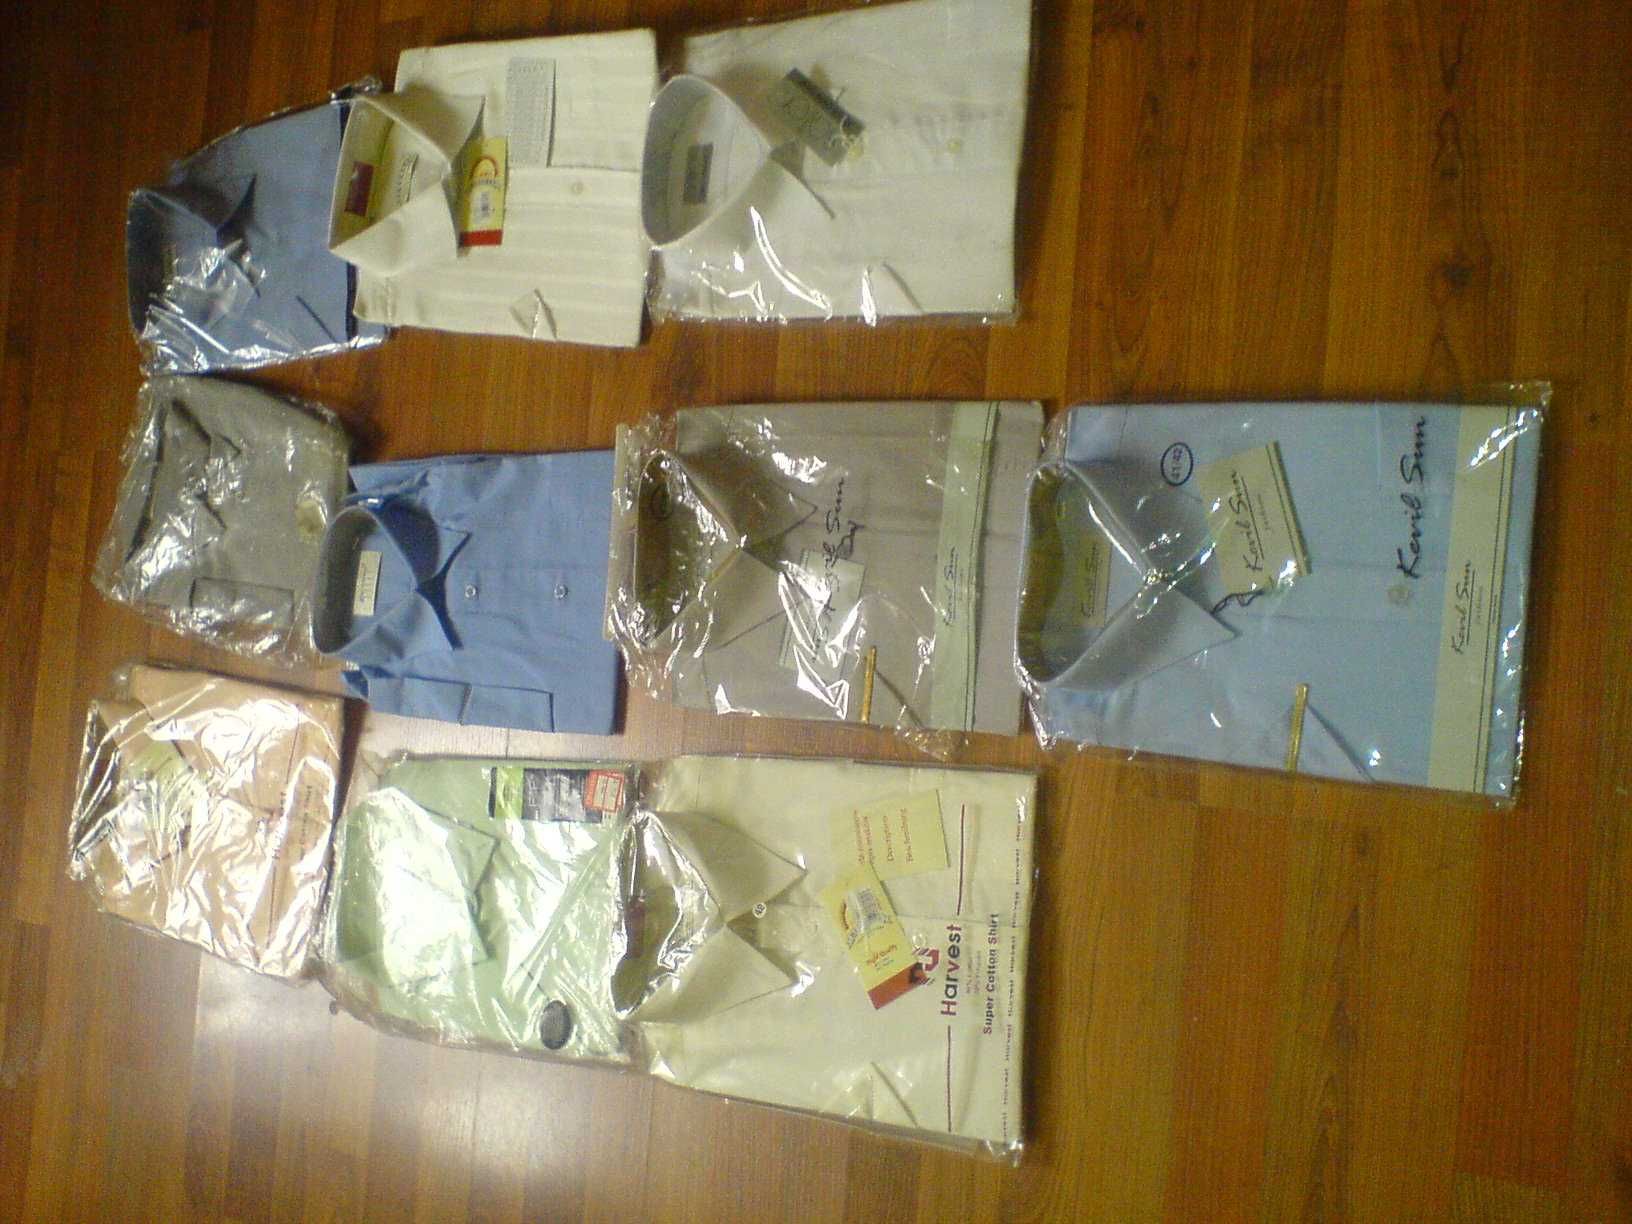 Koszula Męska Krótki Rękaw wzór/kolor, 176-188, 40-45, bawełna NOWE